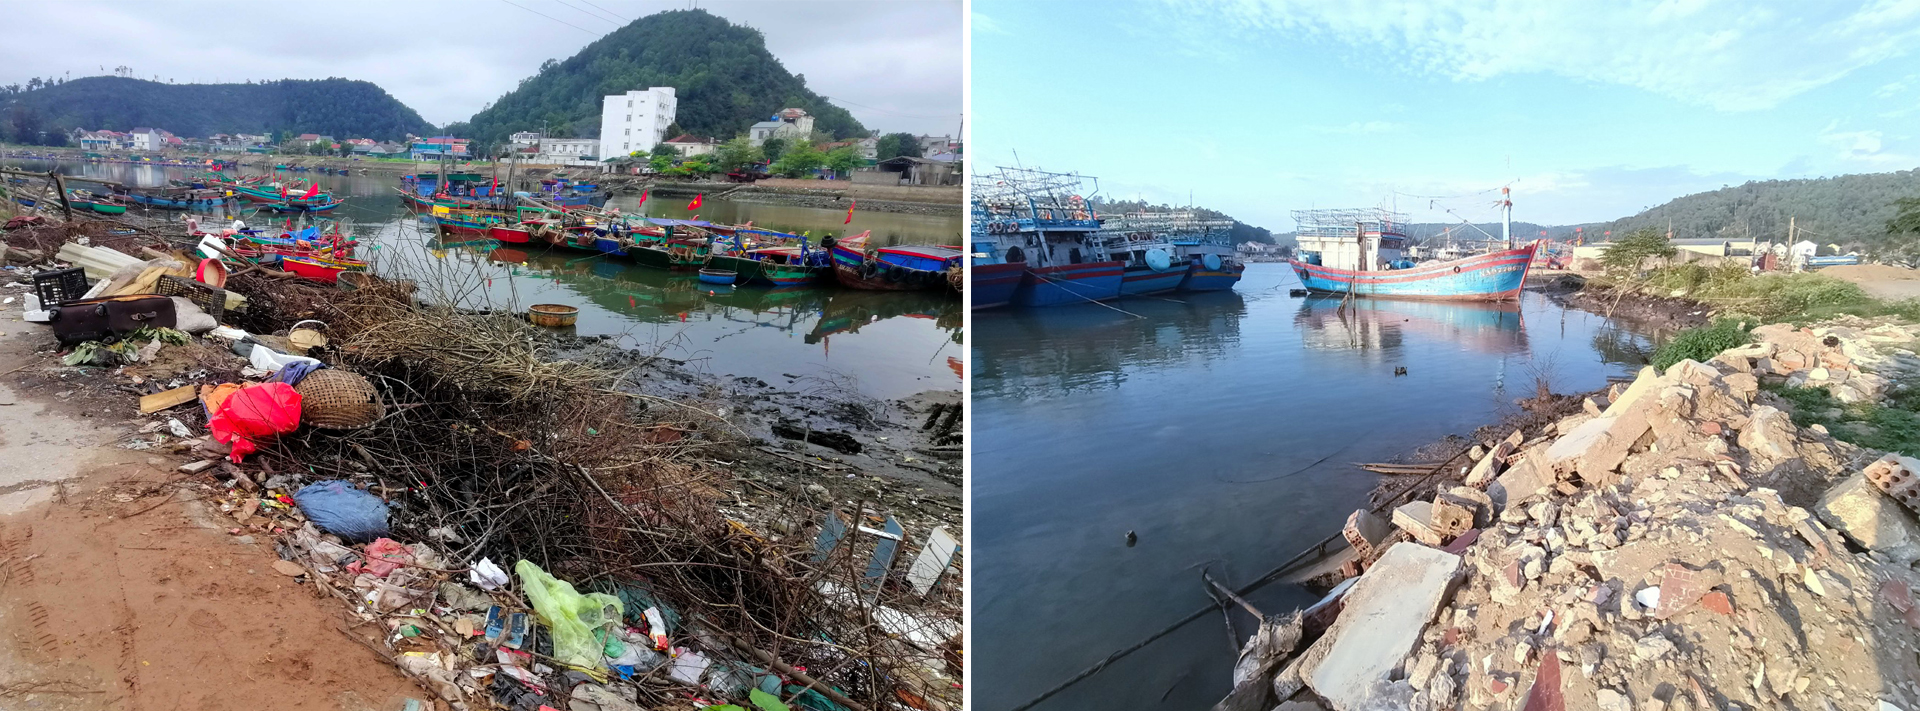 Rác thải tràn ngập bến cá Nghi Thủy gây ô nhiễm (ảnh trái); Một góc cảng lạch Quèn bị xâm lấn bởi rác thải xây dựng.